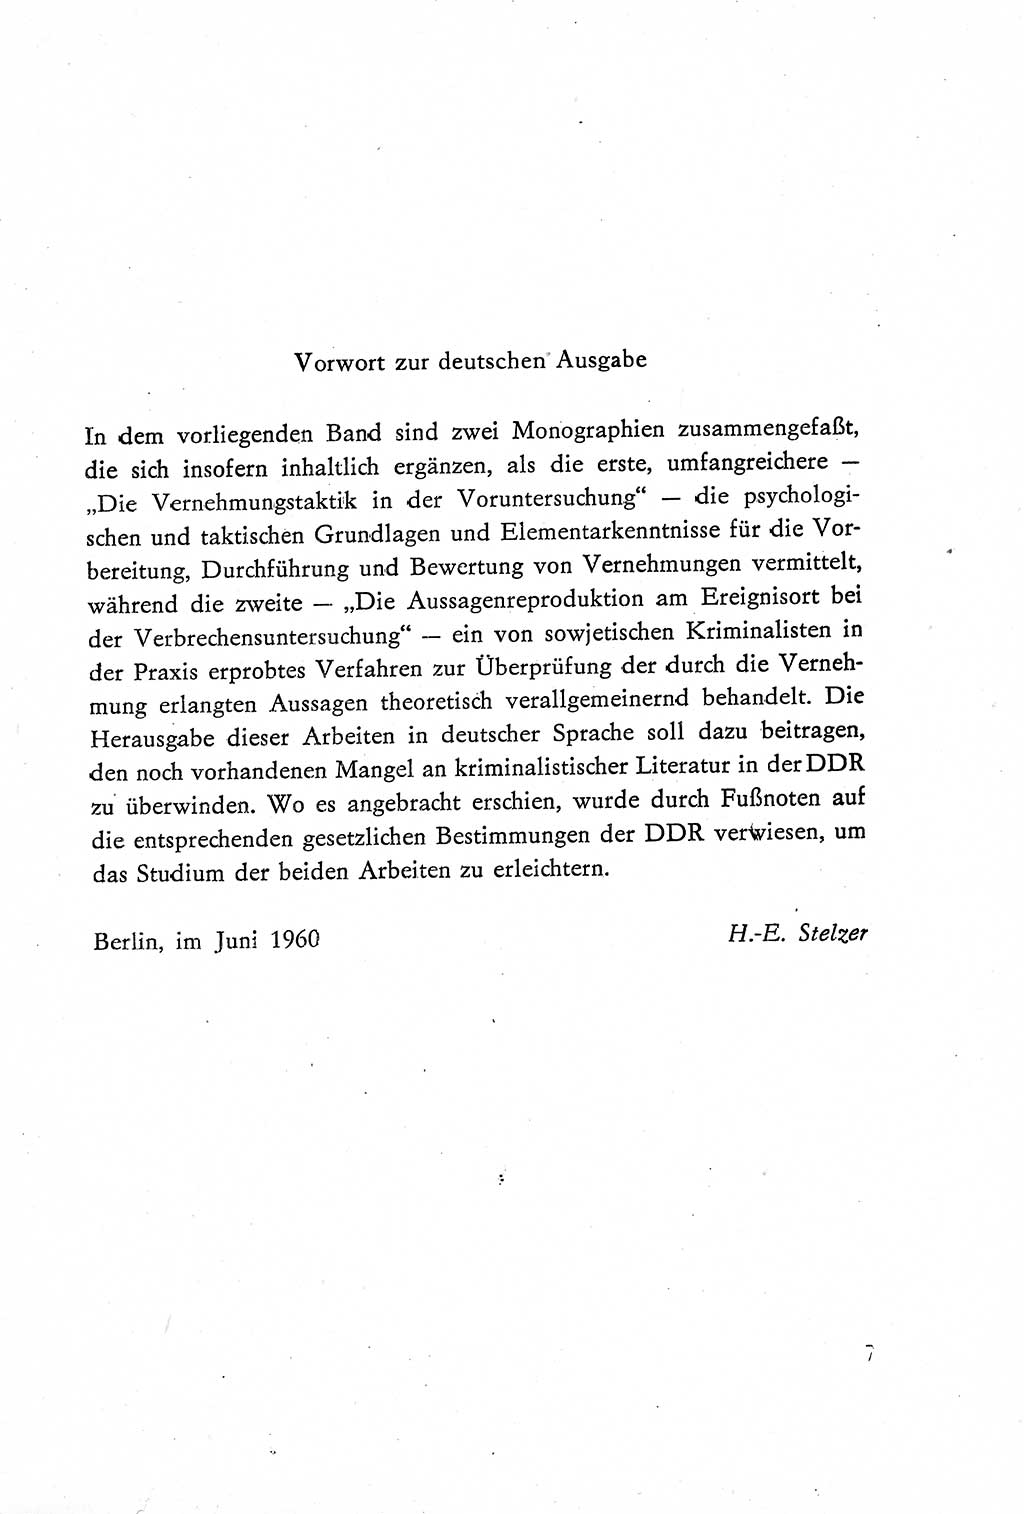 Die Vernehmung [Deutsche Demokratische Republik (DDR)] 1960, Seite 7 (Vern. DDR 1960, S. 7)